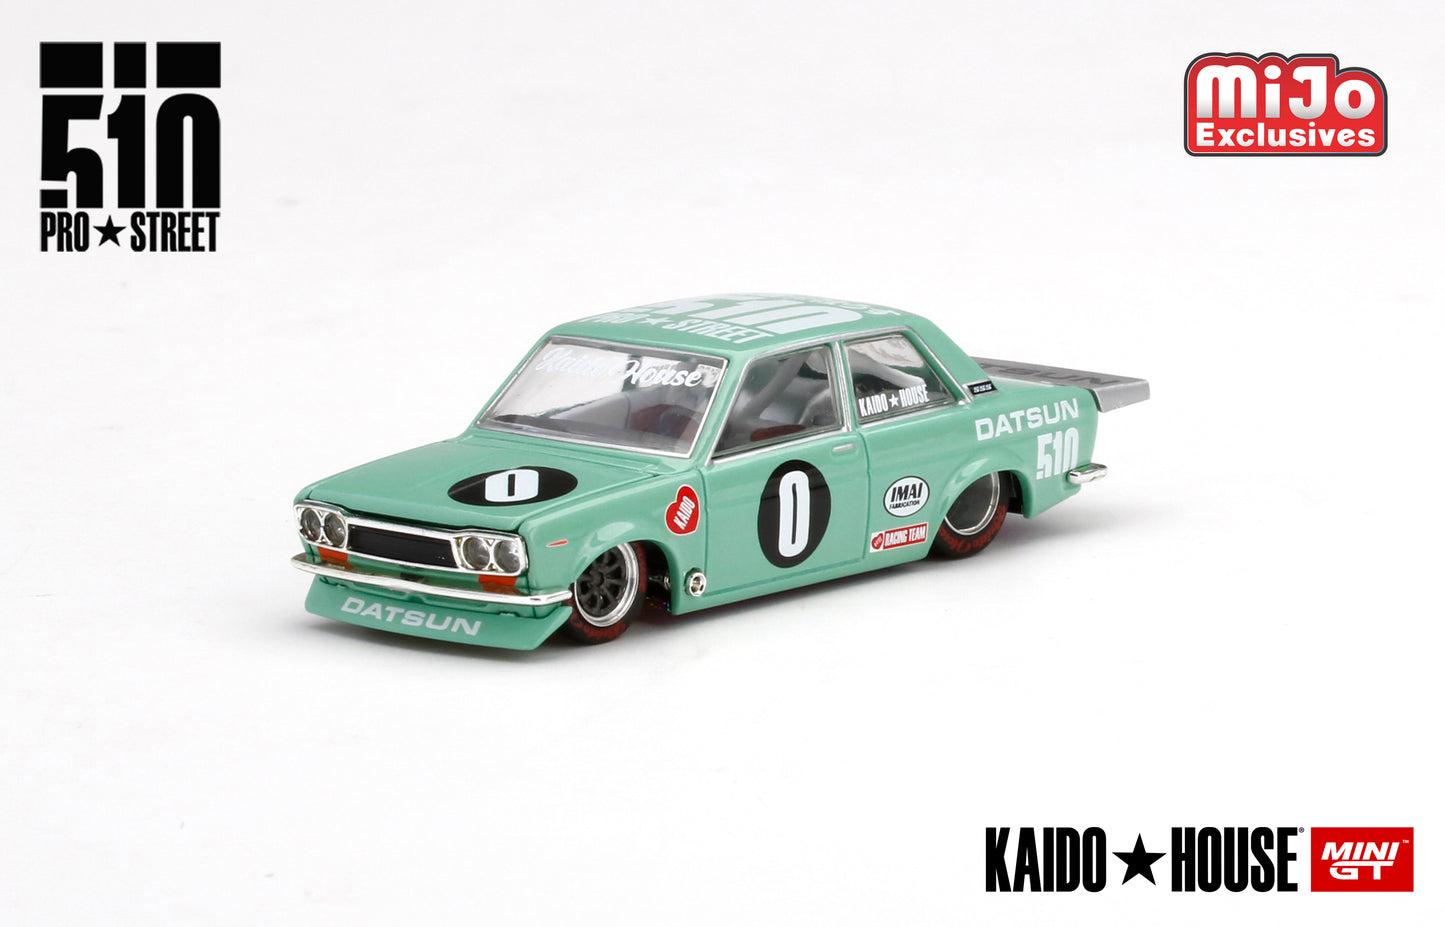 Mini GT Kaido House 008 Datsun 510 Pro Street KDO510 1:64